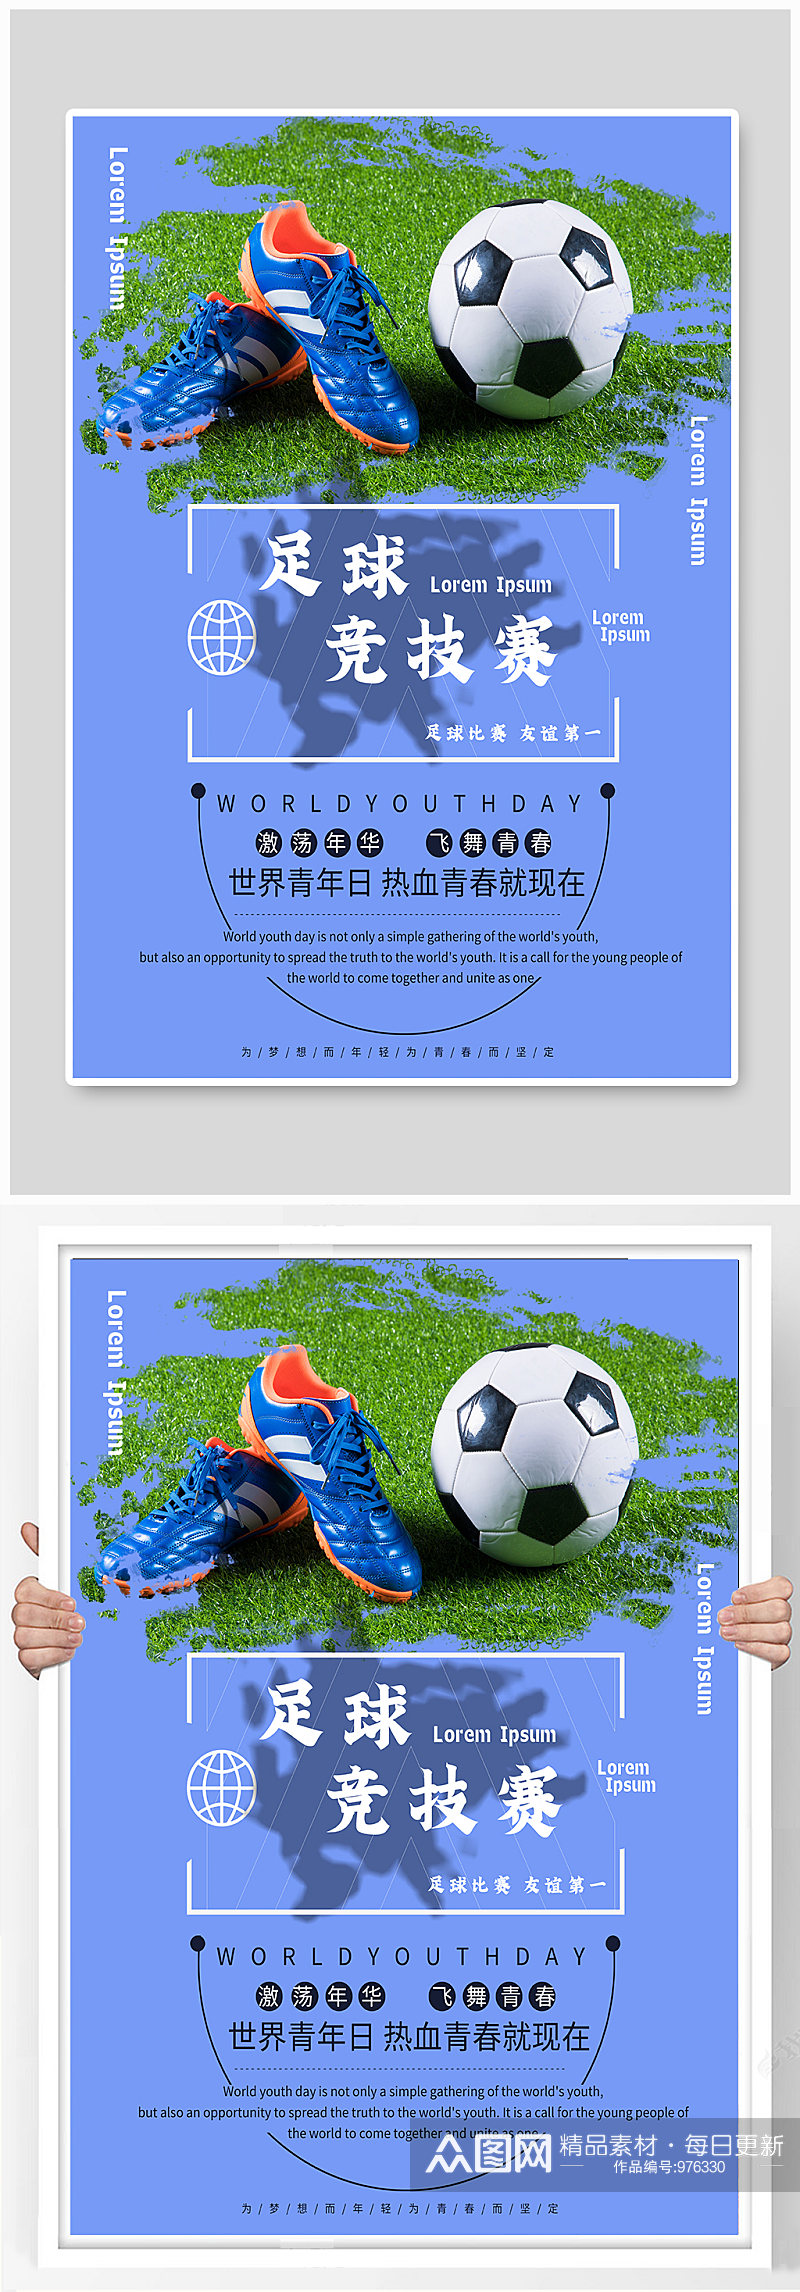 足球运动宣传海报素材